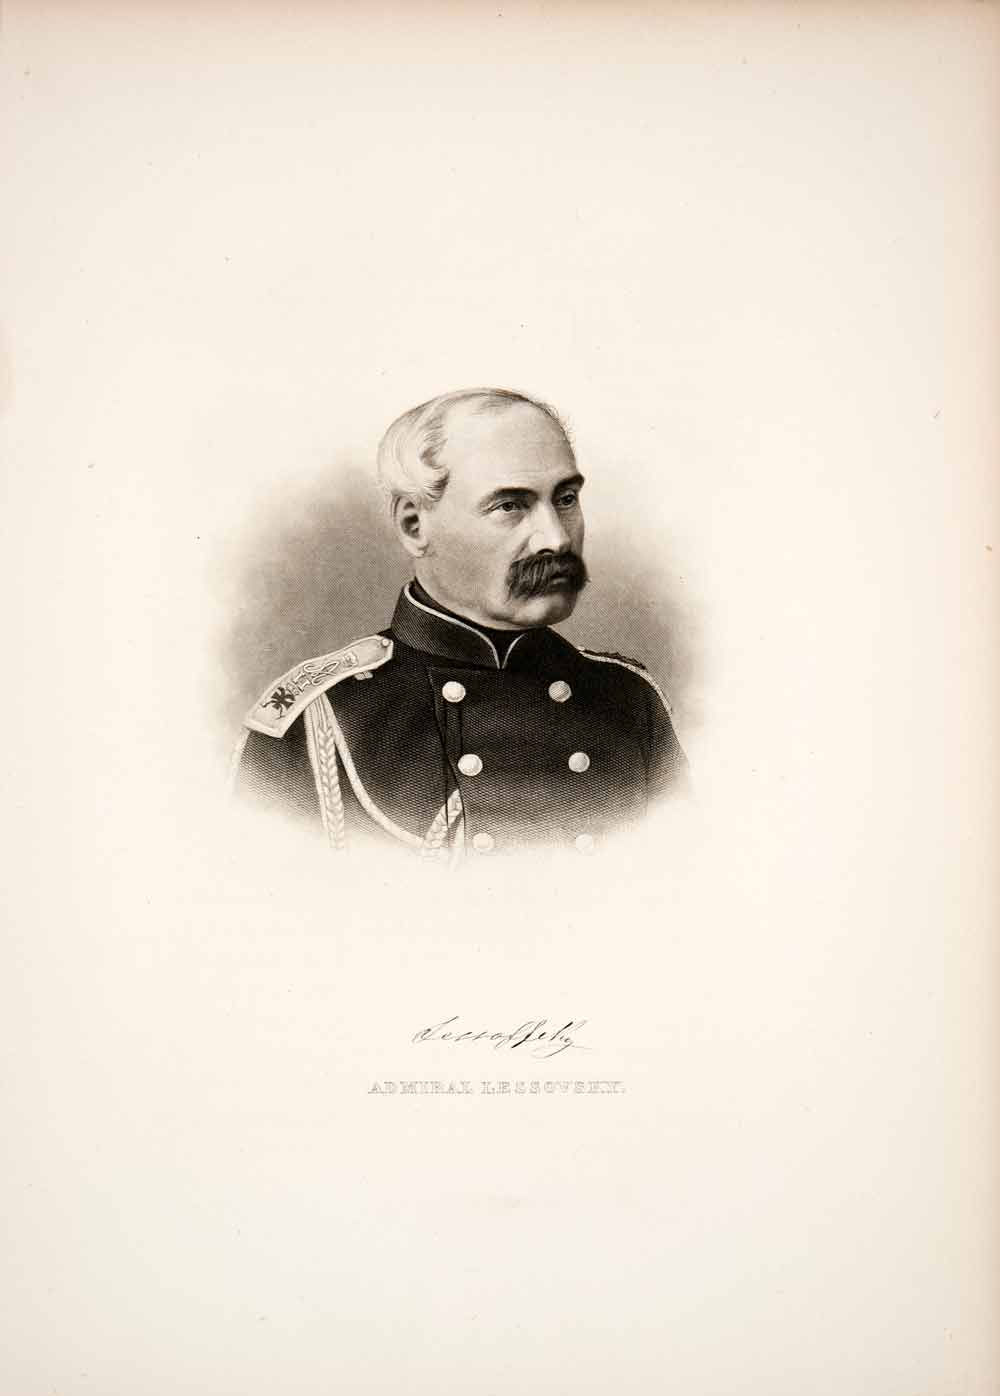 1879 Steel Engraving Rear Admiral Lessovsky Uniform Sailor US Navy XGOB8